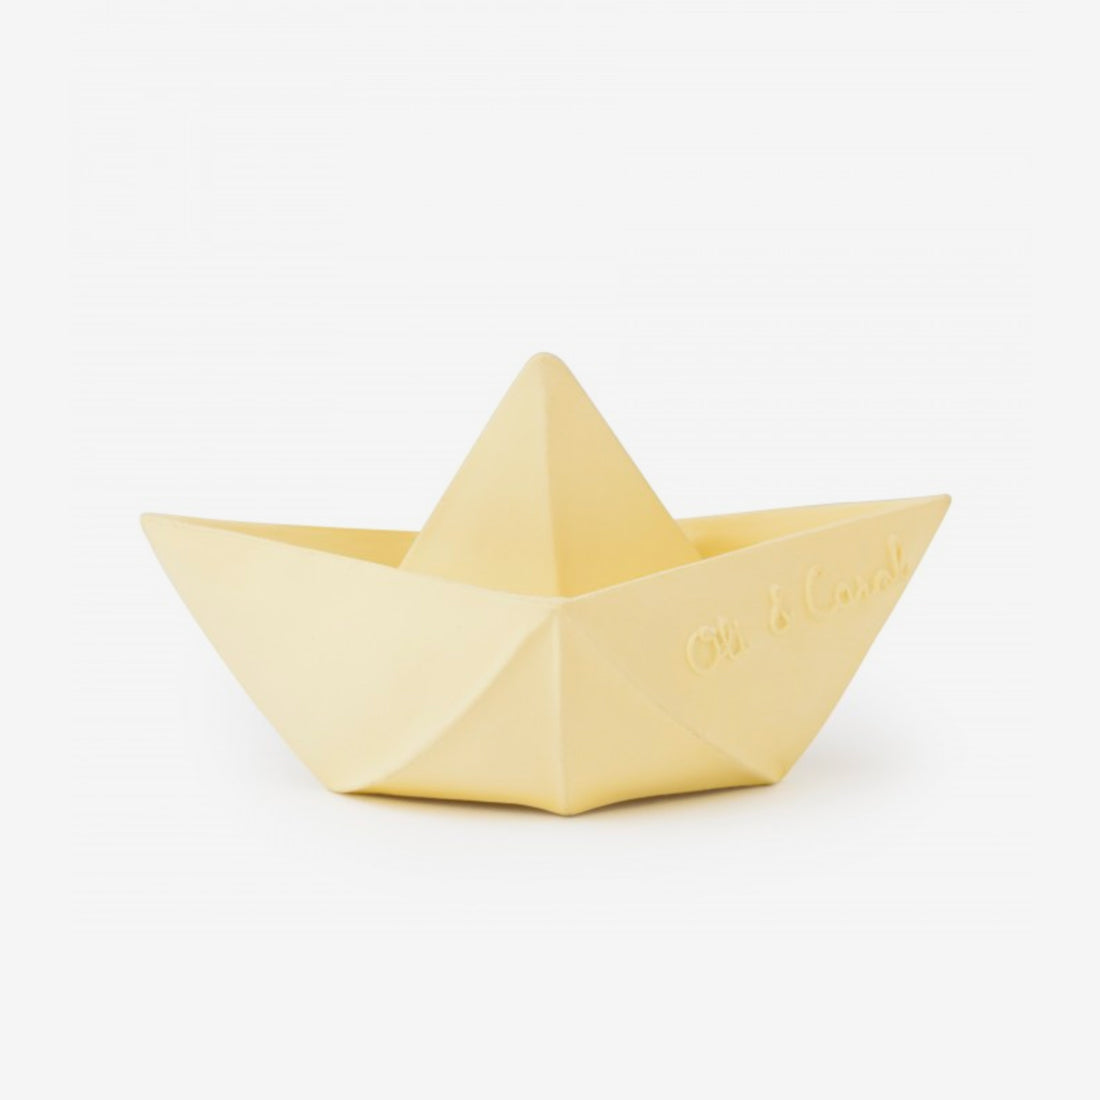 Origami Rubber Boat - Vanilla